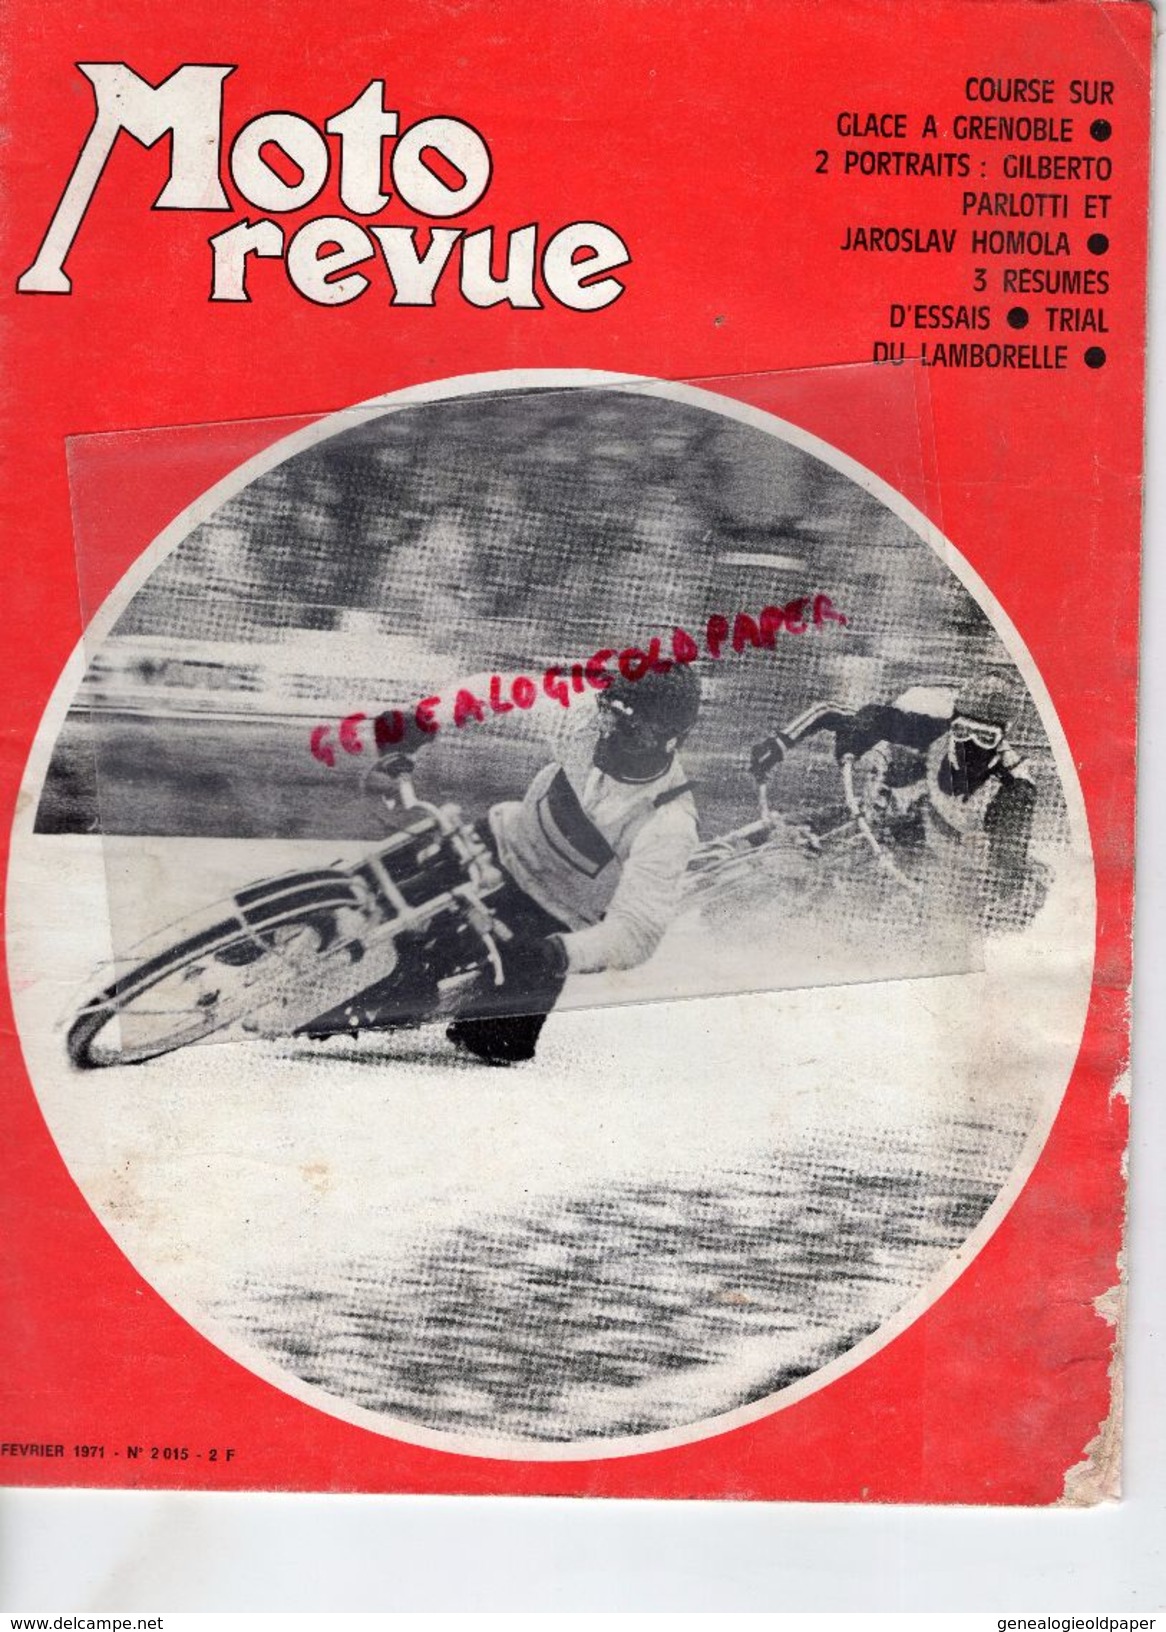 MOTO REVUE -N° 2015-13-2-1971- COURSE SUR GLACE GRENOBLE-GILBERTO PARLOTTI-JAROSLAV HOMOLA-TRIAL LAMBORELLE-KAWASAKI - Motorrad